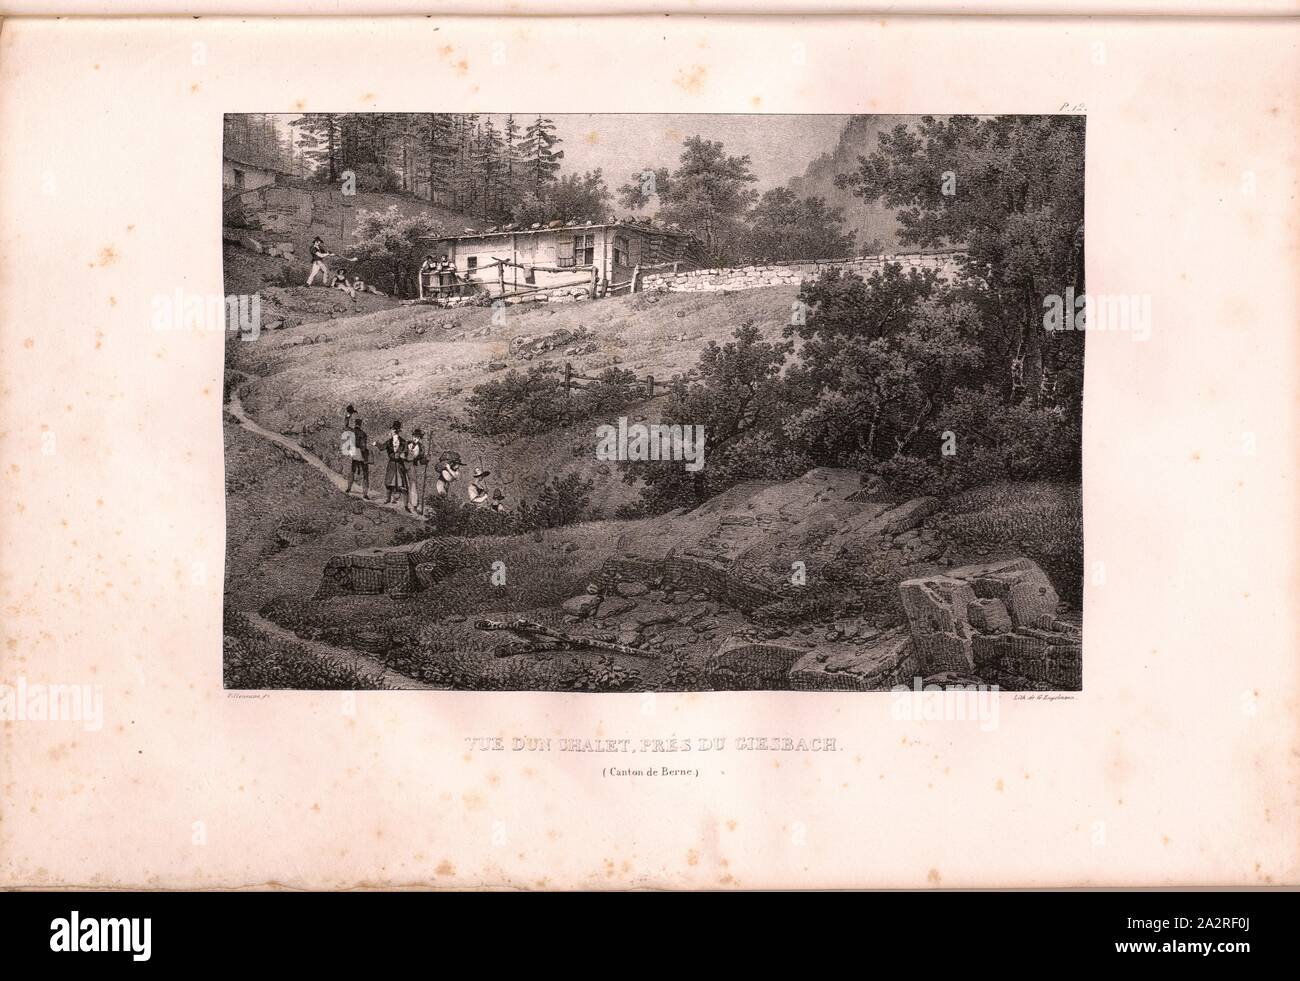 View of a chalet near Giessbach, Alpine hut above the Giessbach Falls, signed: Villeneuve, G. Engelmann, lithograph, plate 12 (vol. 1, part 1), Villeneuve, M. (ft.); Engelmann, Godefroy (lith.), 1823, Hilaire Léon Sazerac, Godefroy Engelmann: Lettres sur la Suisse (...). Paris: [s.n.], 1823-1832 Stock Photo